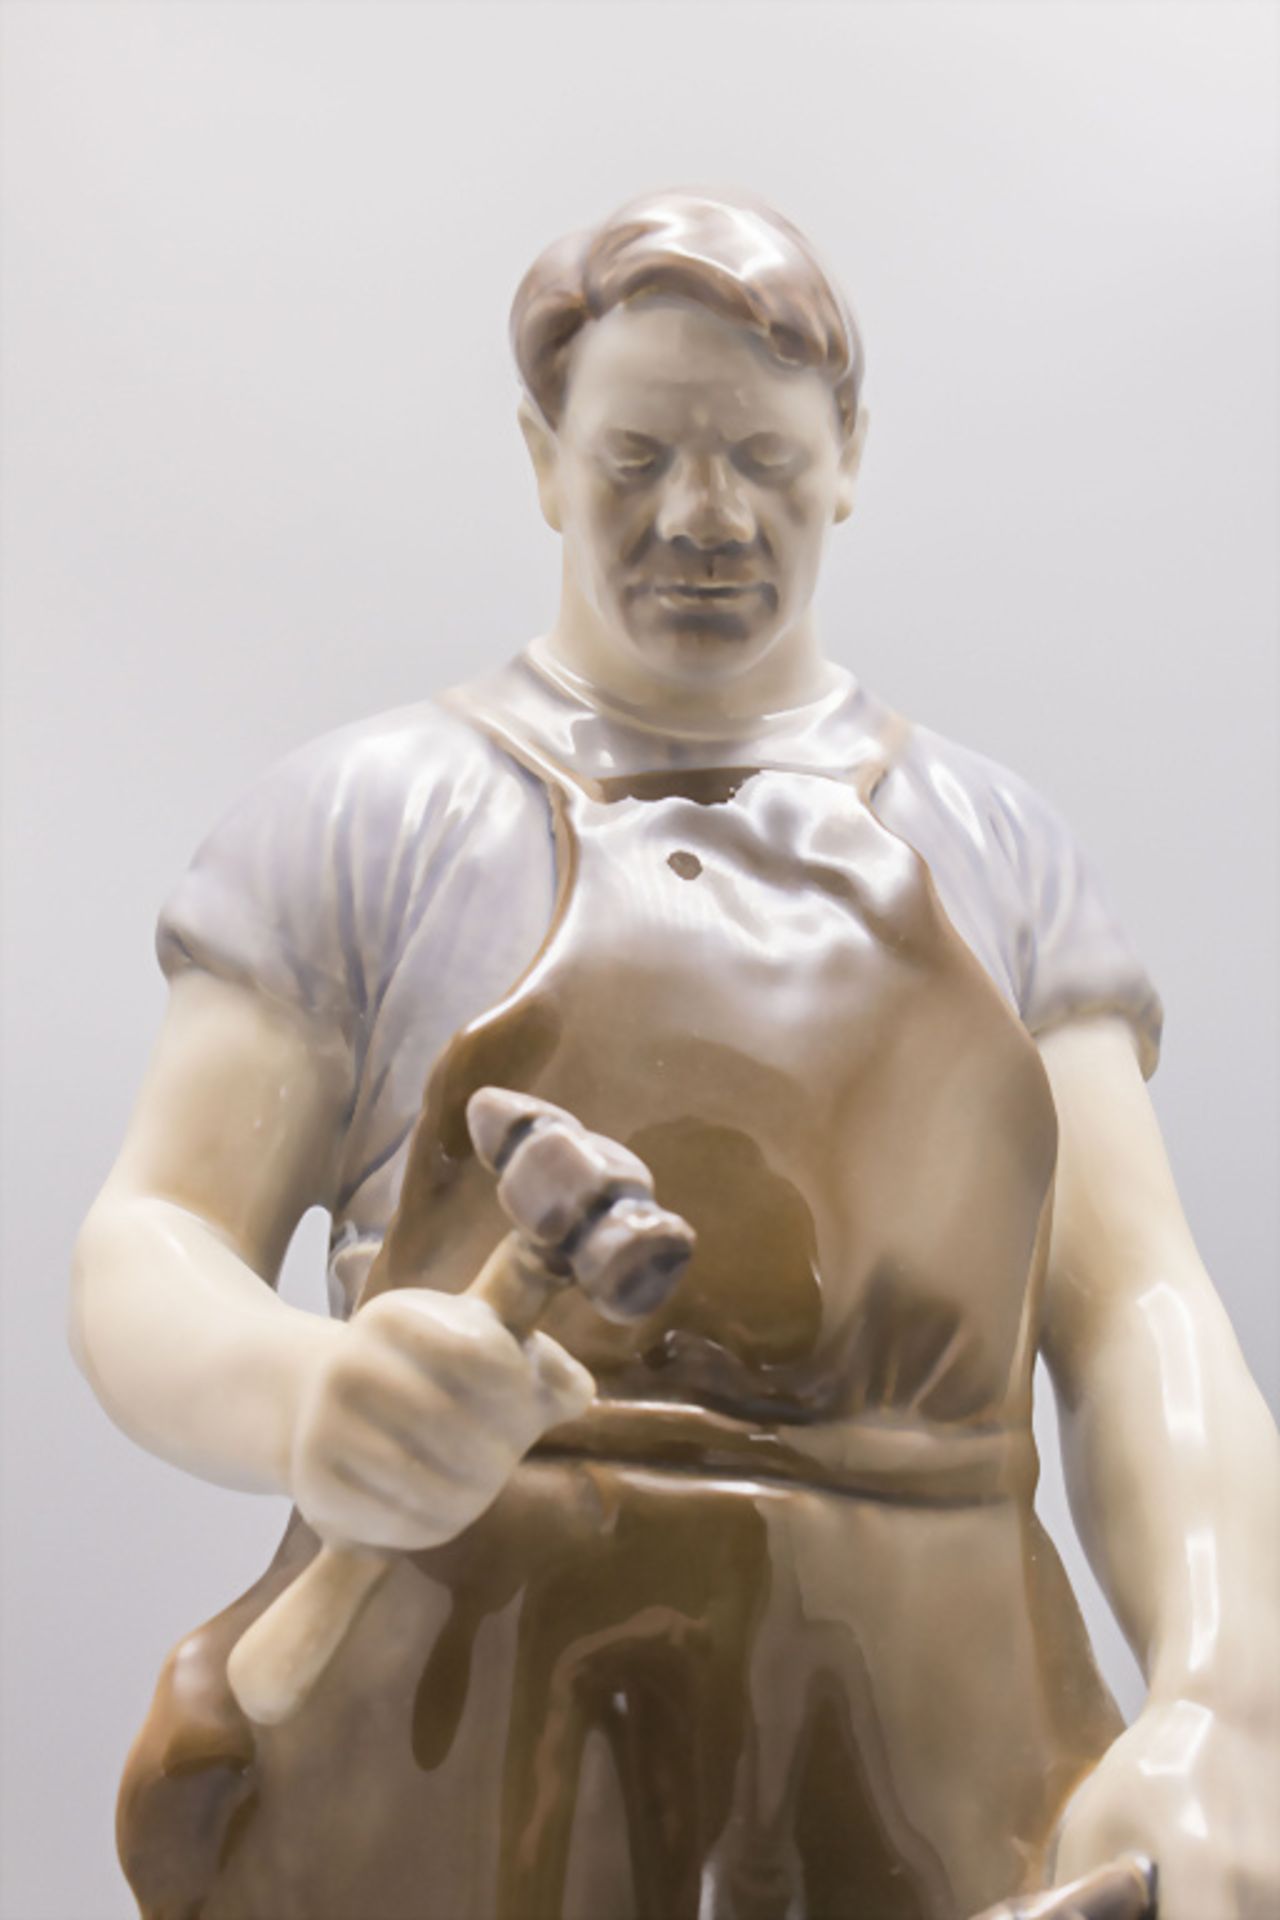 Porzellanfigur 'Schmied' / A porcelain figure of a blacksmith, Bing & Gröndahl, Copenhagen - Bild 5 aus 8